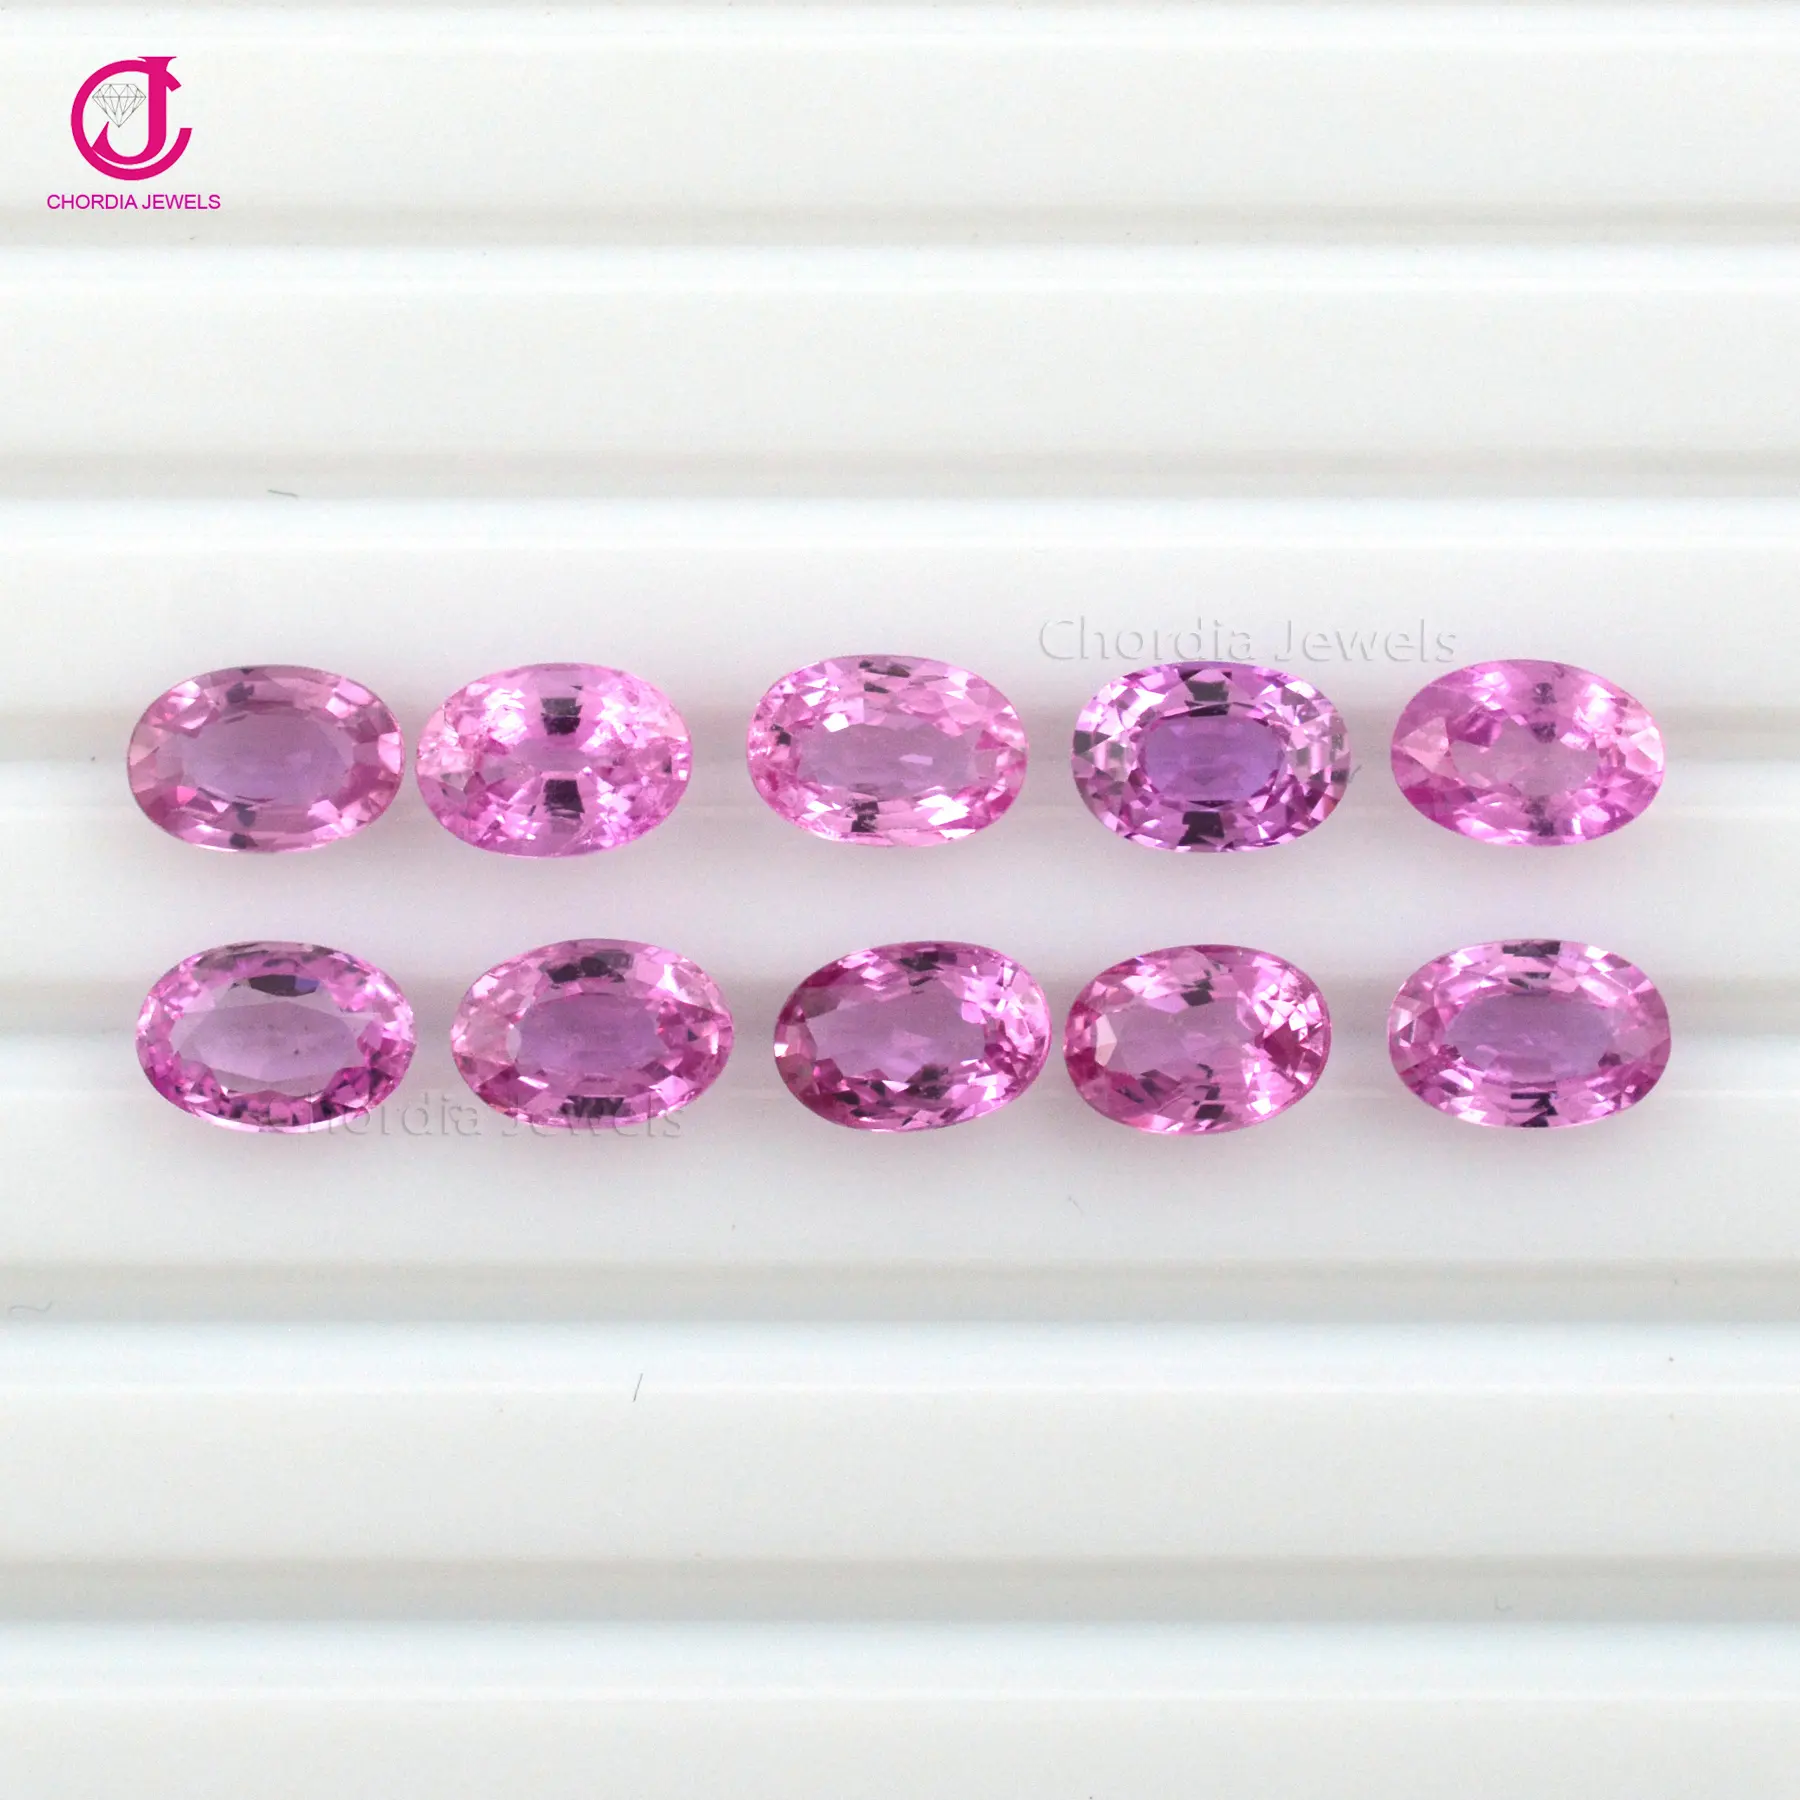 Gema suelta de corte ovalado de zafiro rosa, piedra Natural de la mejor calidad, 6x4mm, para regalos personalizados, precio de oferta